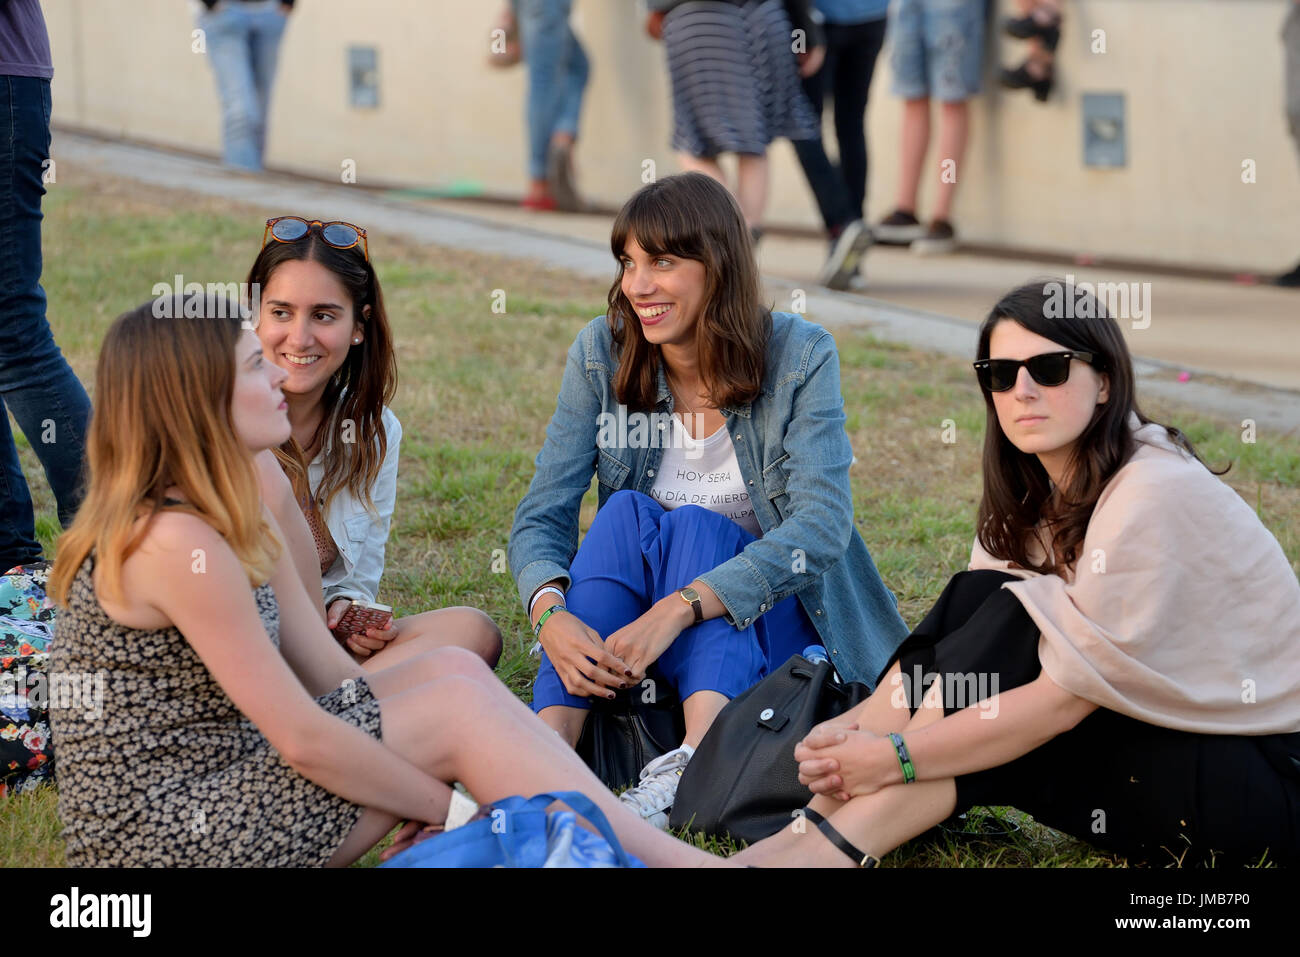 BARCELONA - JUN 1: People at Primavera Sound 2016 Festival on June 1, 2016 in Barcelona, Spain. Stock Photo